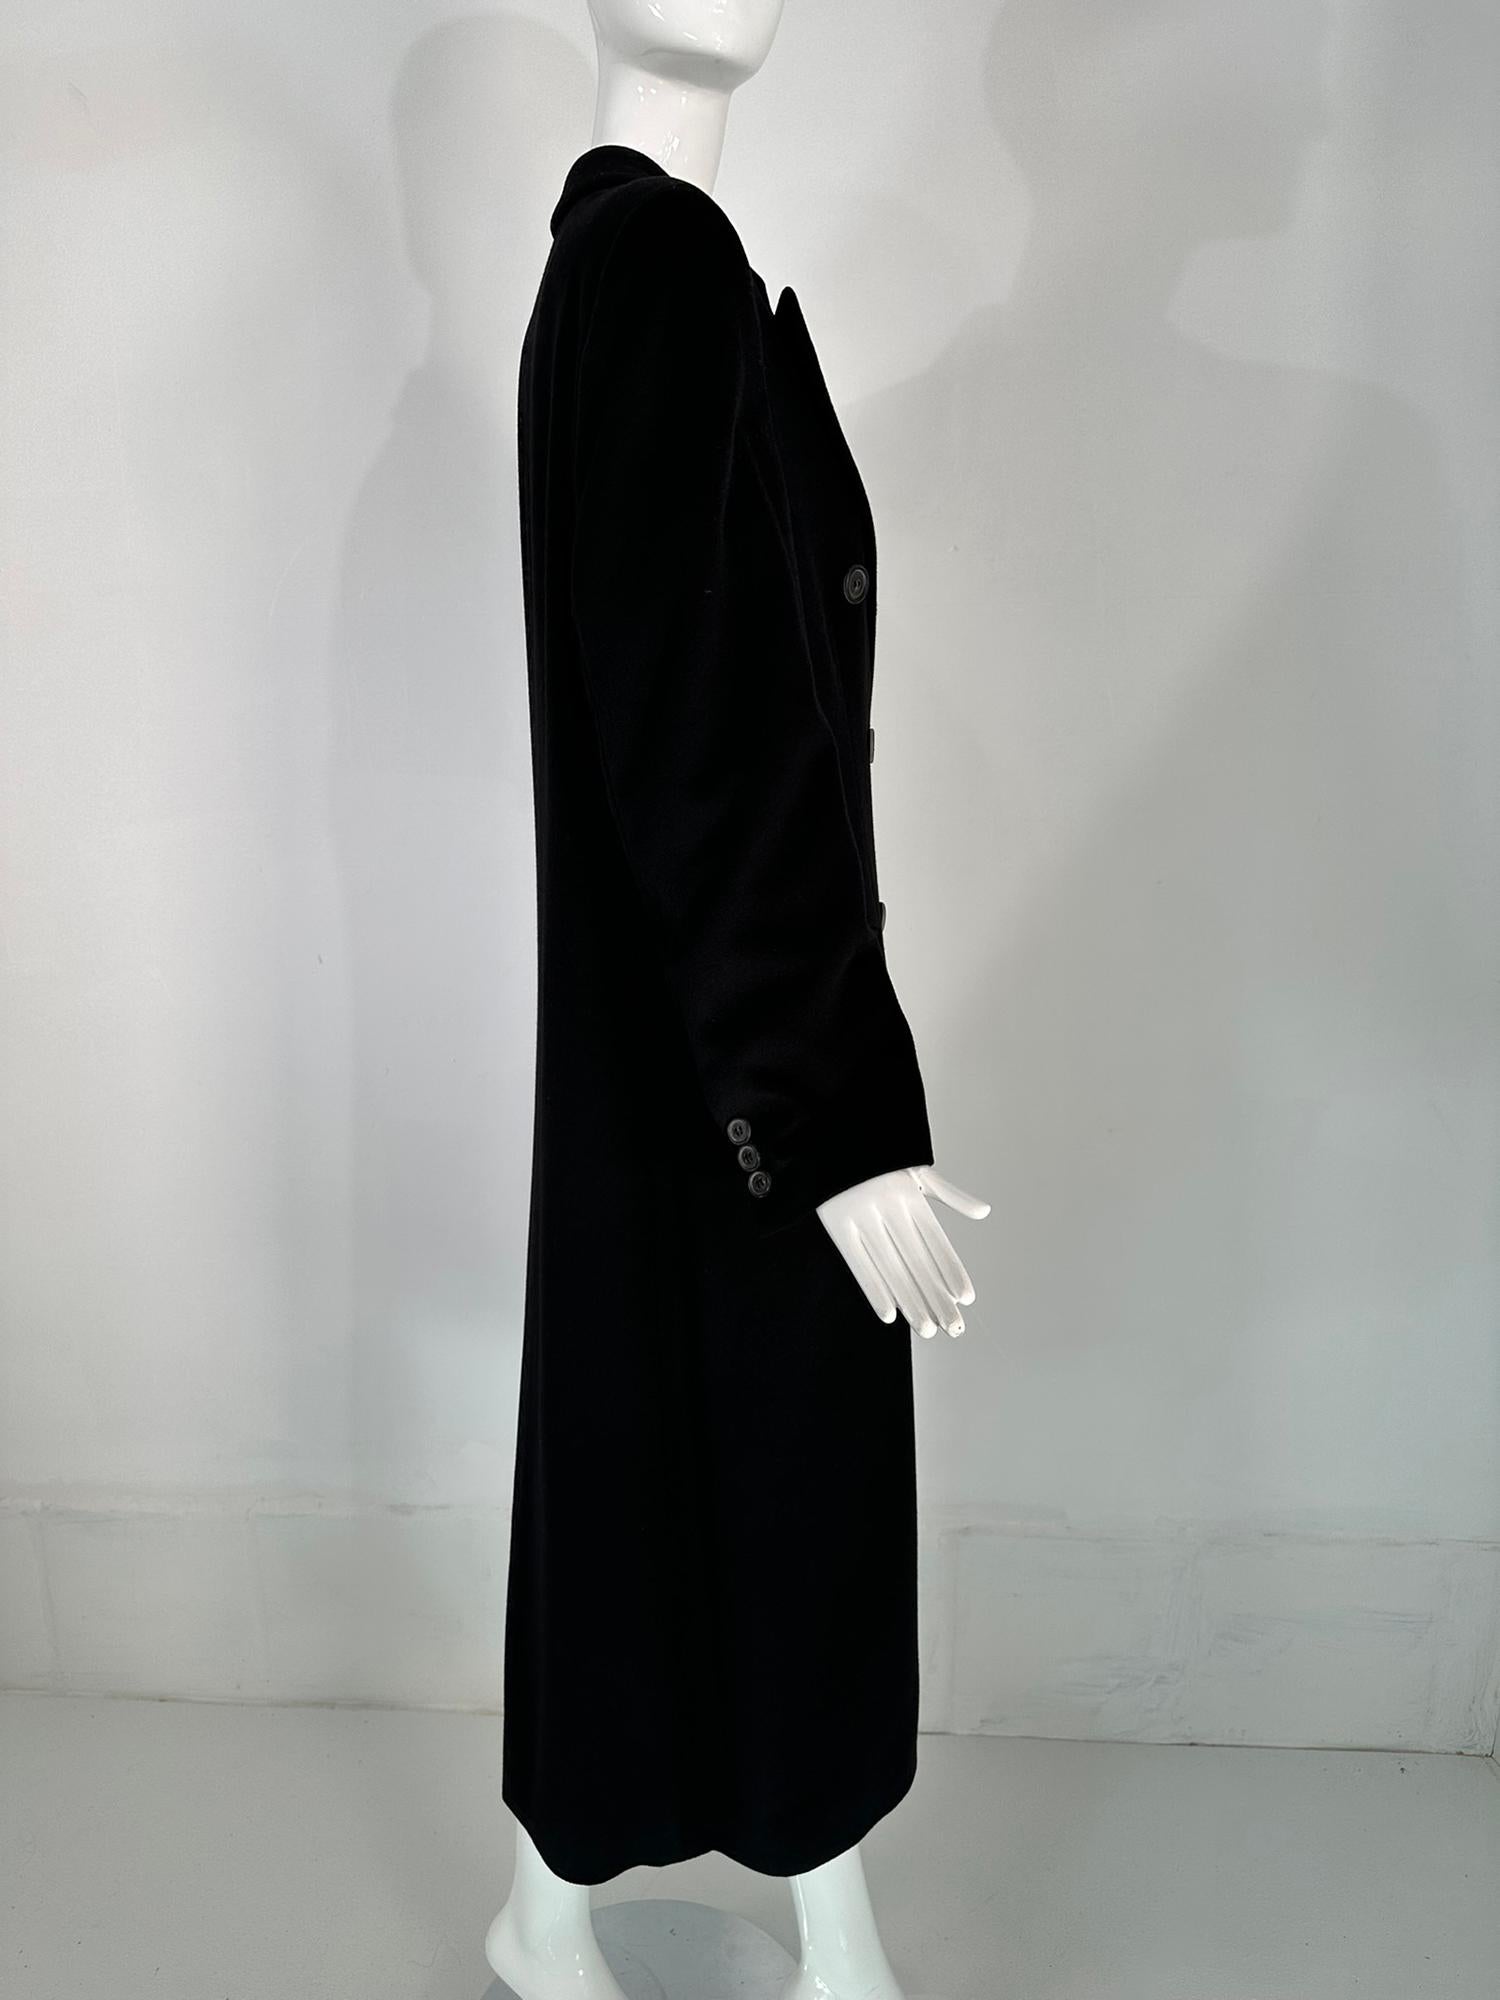 Giorgio Armani Classico Black Label Black Cashmere Double Breasted Winter Coat 1